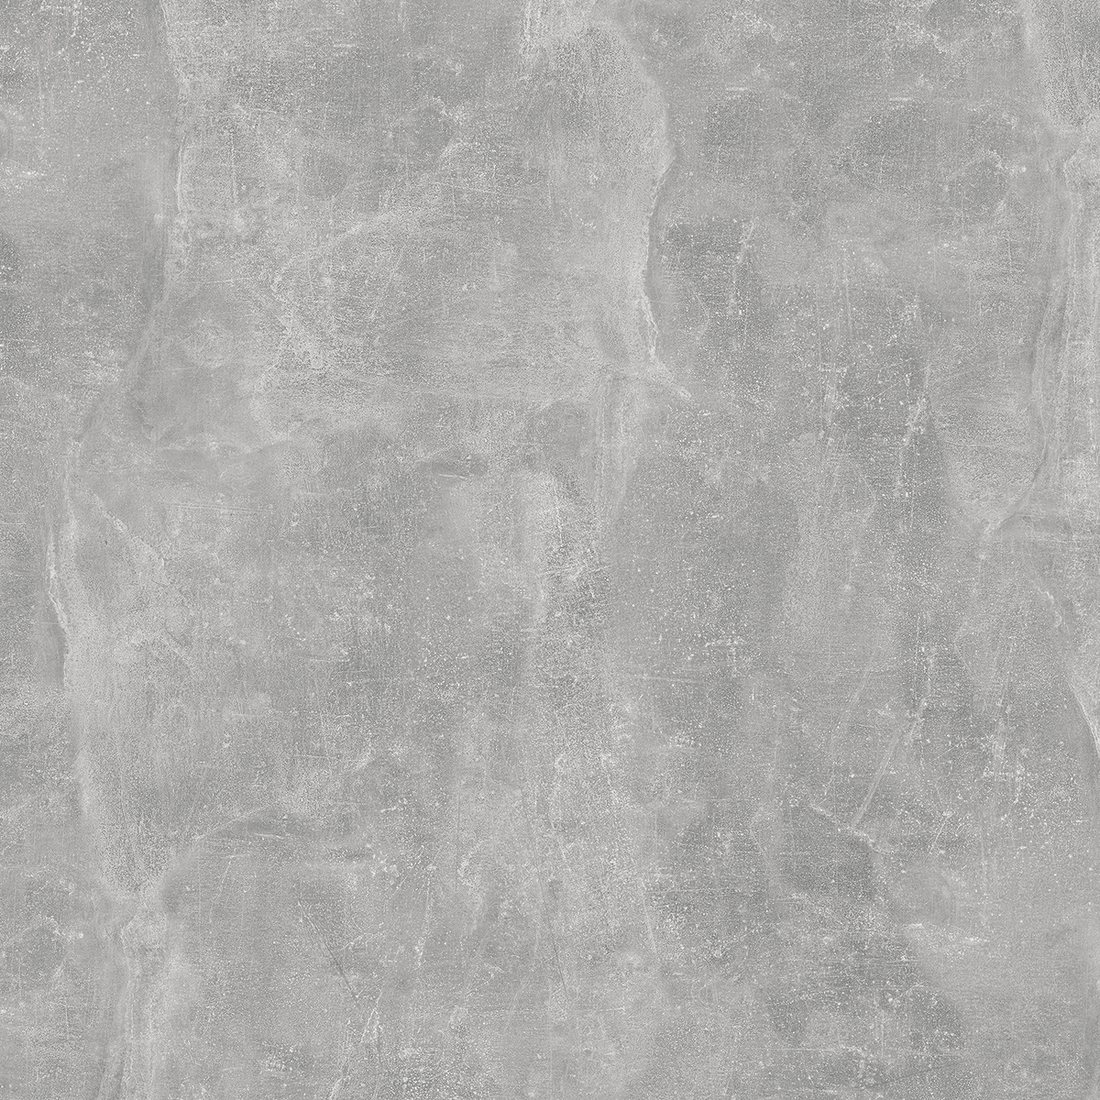 4298 Világos beton + KR04299 Sötét beton matt konyhai hátfal 10 mm